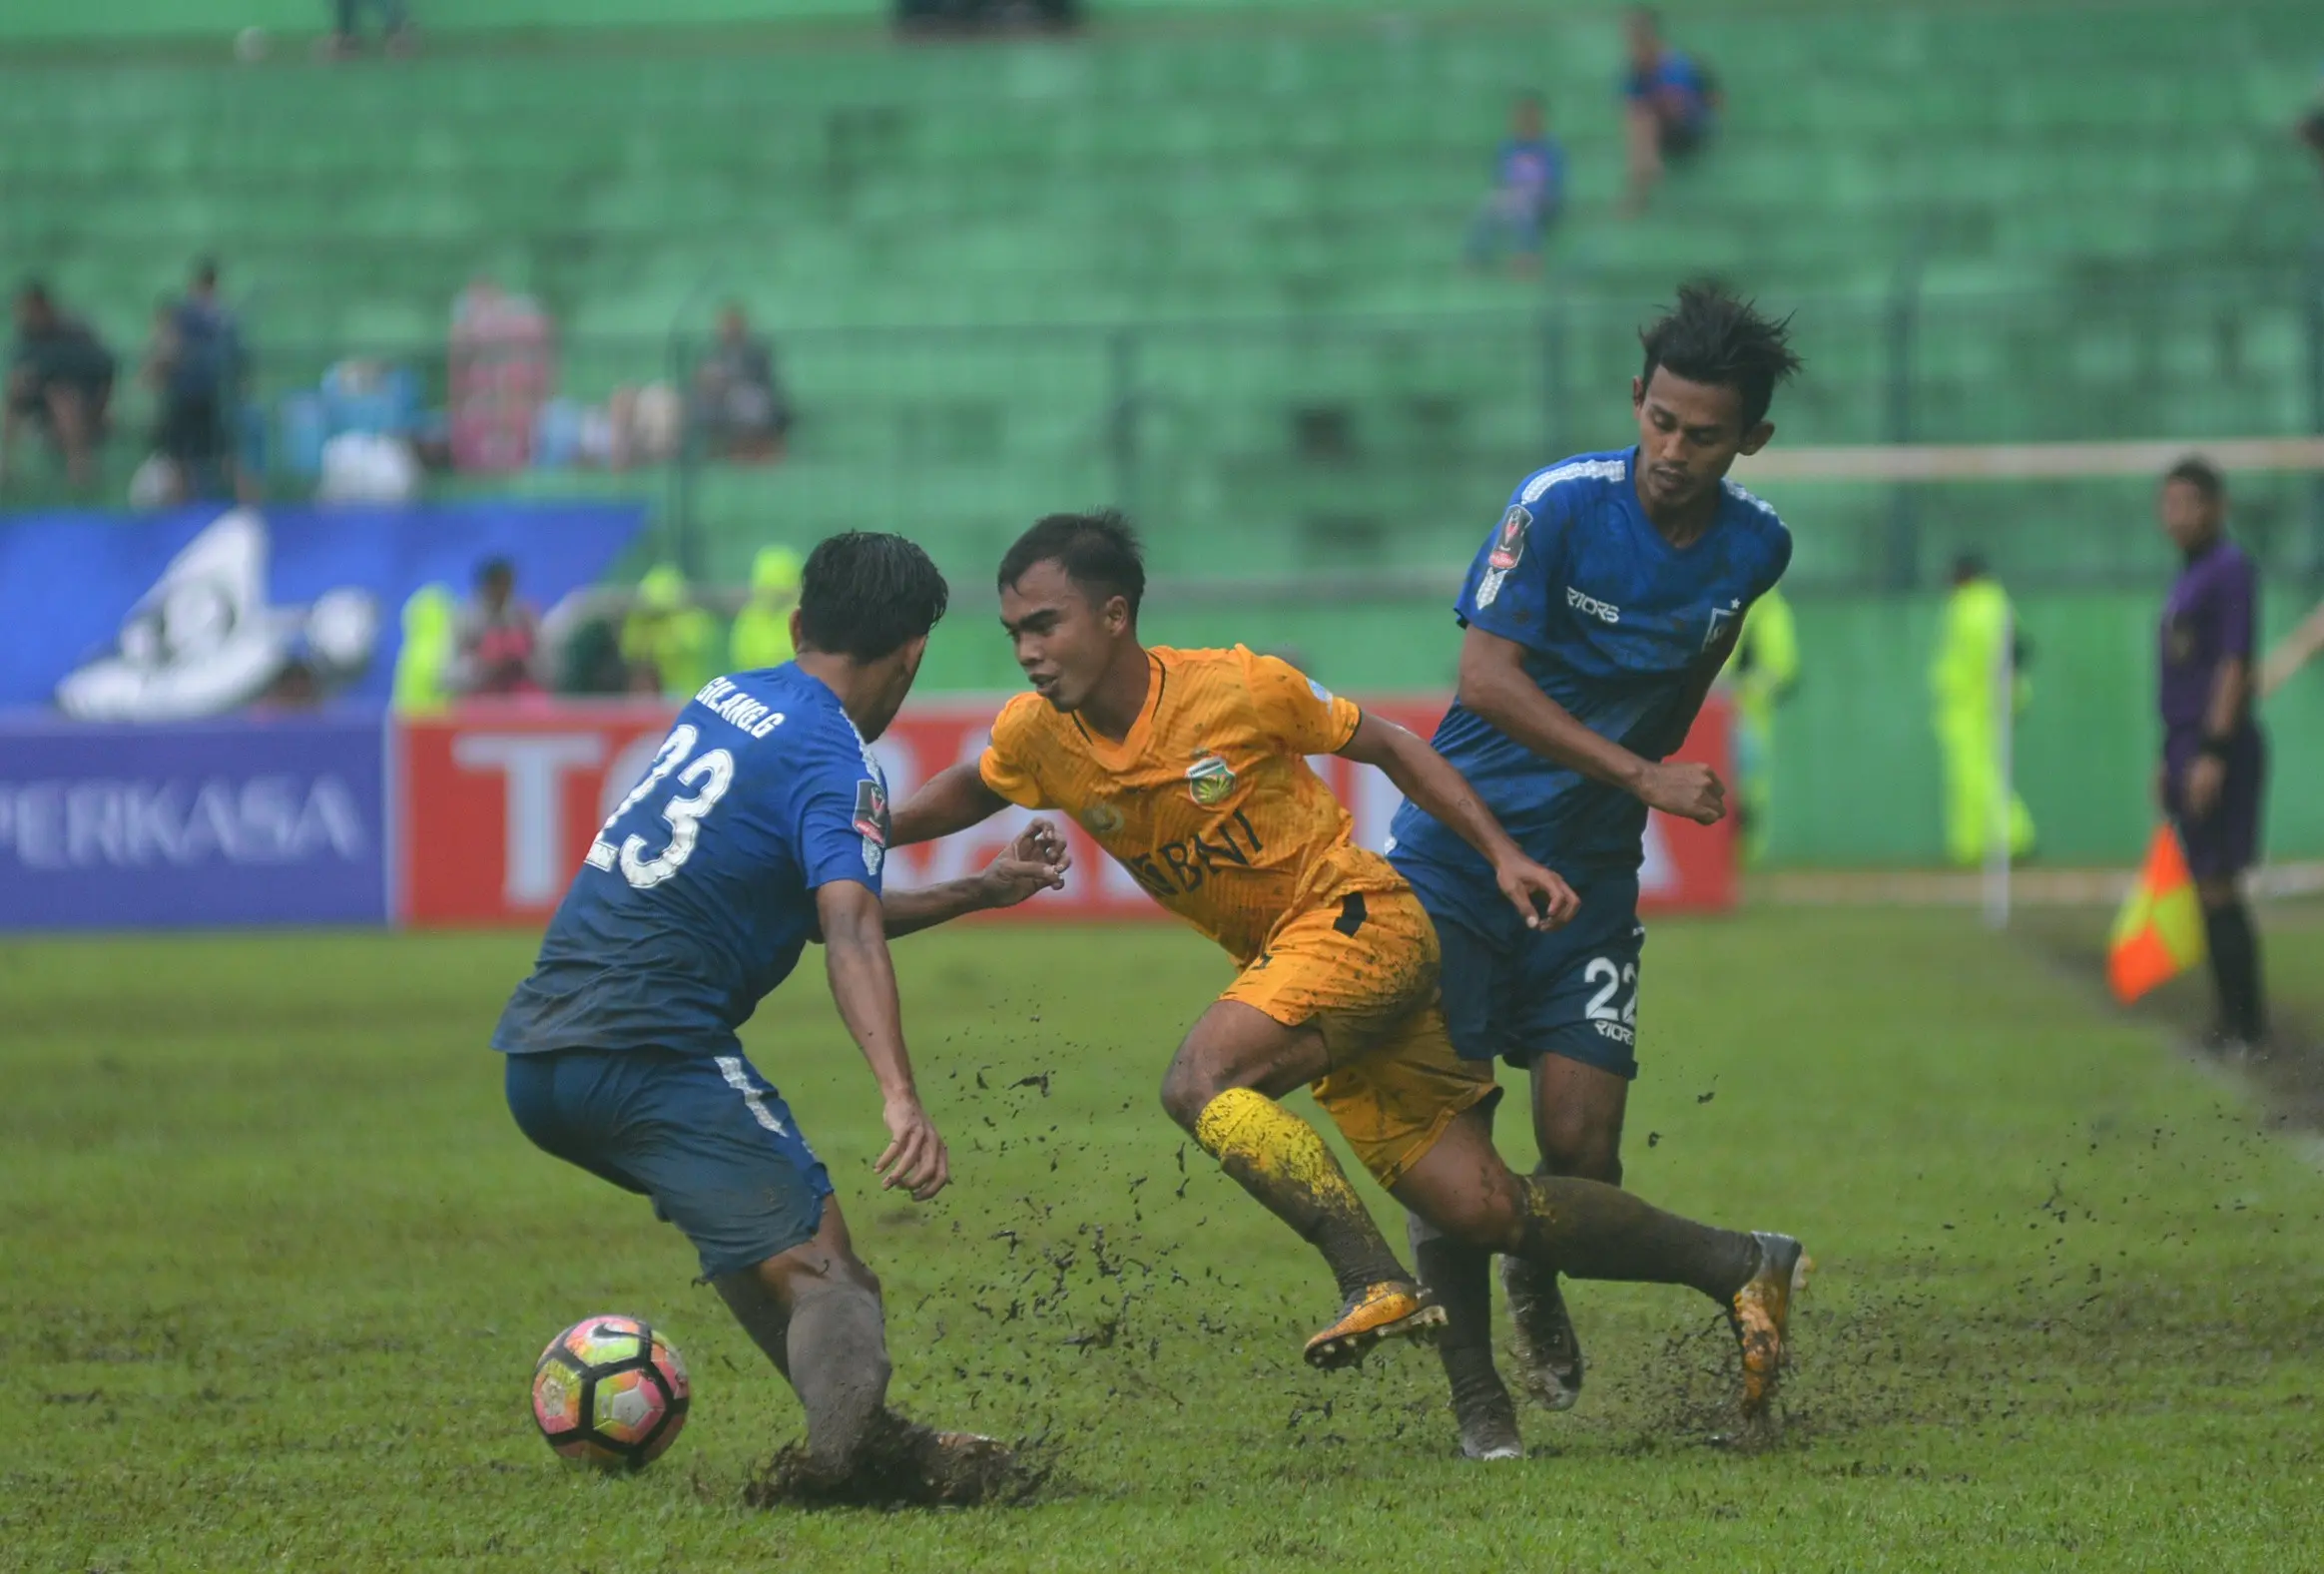 Laga Bhayangkara FC vs PSIS Semarang di Stadion Gajayana, Malang, Sabtu (20/1/2018). Laga berakhir 1-0 untuk Bhayangkara FC. (Liputan6.com/Rana Adwa)